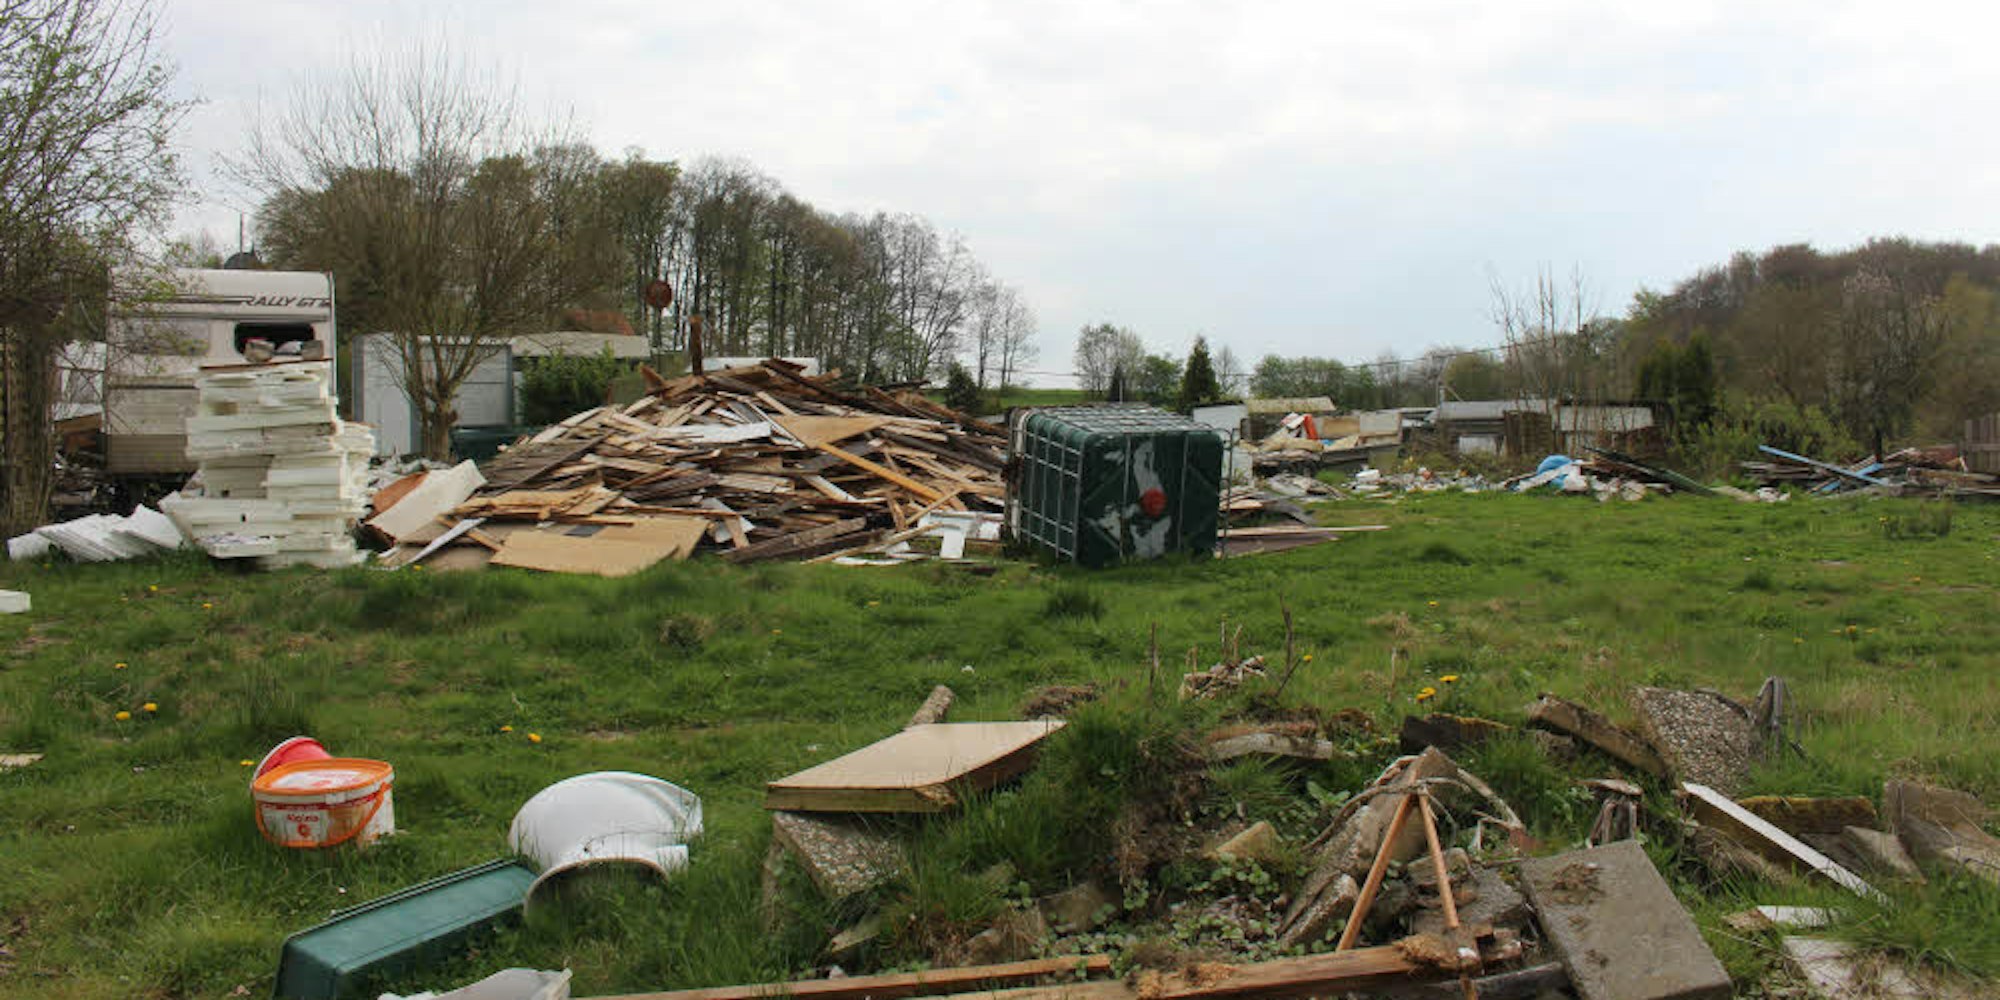 Der Campingplatz Hasenberg ist von Trümmern übersät. Doch der Eigentümer konnte sich mit seinen Bauplänen nicht durchsetzen.